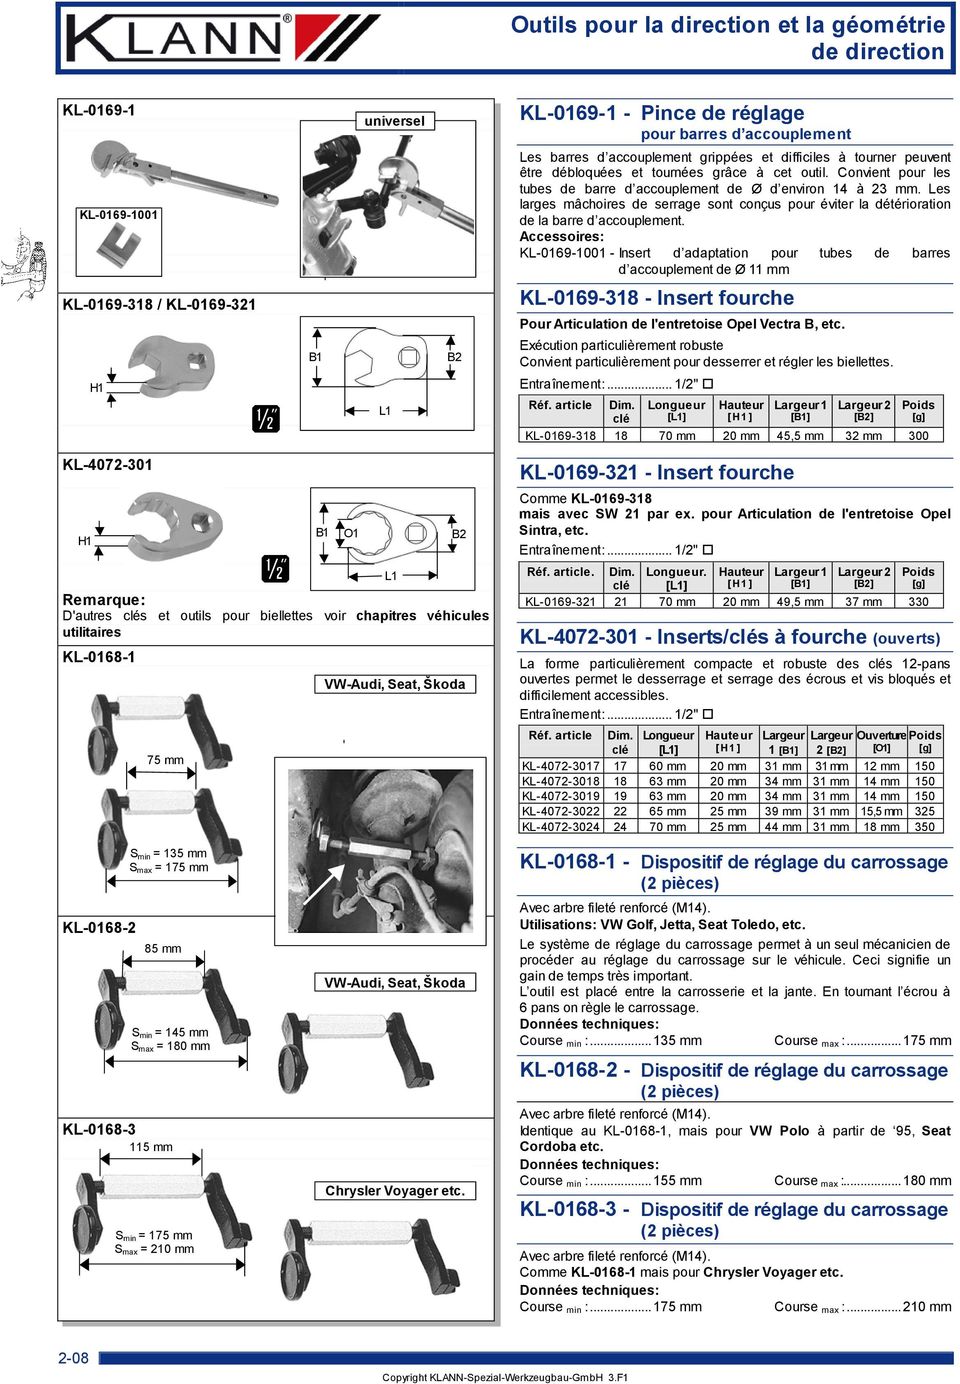 Accessoires: KL-0169-1001 - Insert d adaptation pour tubes de barres d accouplement de Ø 11 mm KL-0169-318 / KL-0169-321 H1 d B1 L1 B2 KL-0169-318 - Insert fourche Pour Articulation de l'entretoise